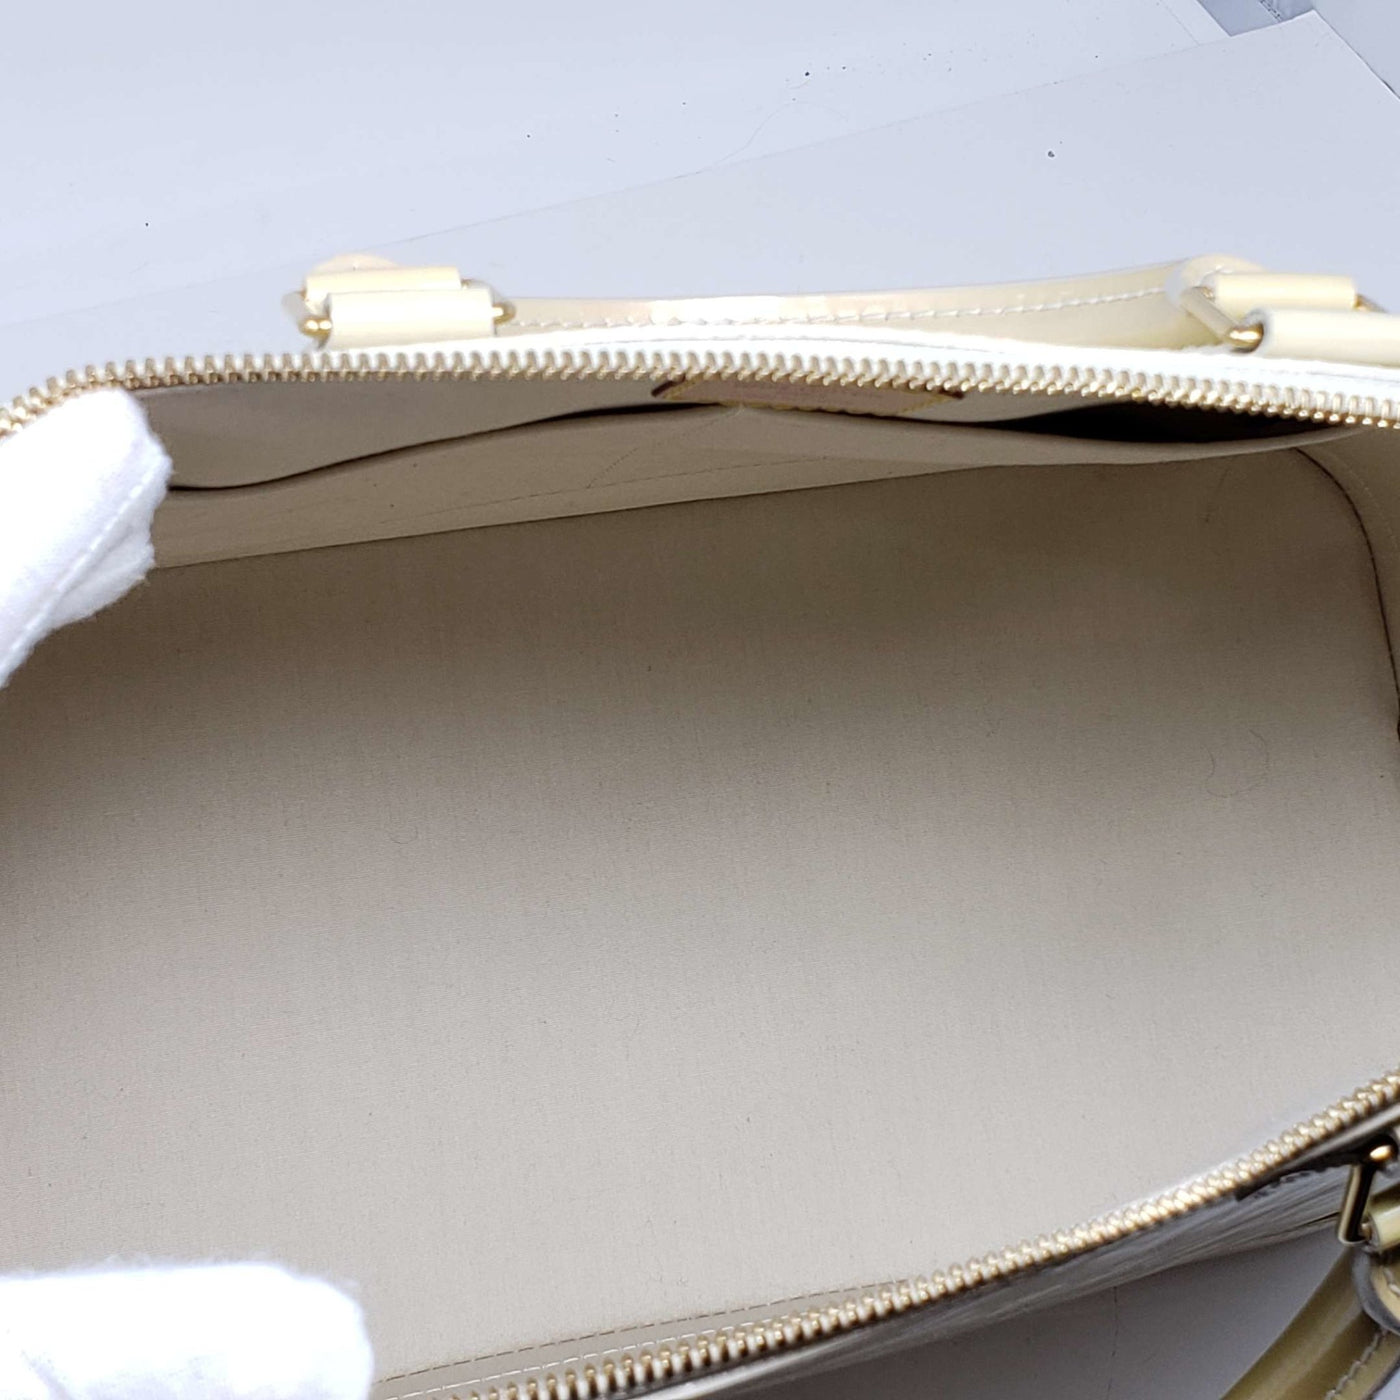 Louis Vuitton Alma GM Vernis Hand Bag | Luxury Cheaper.